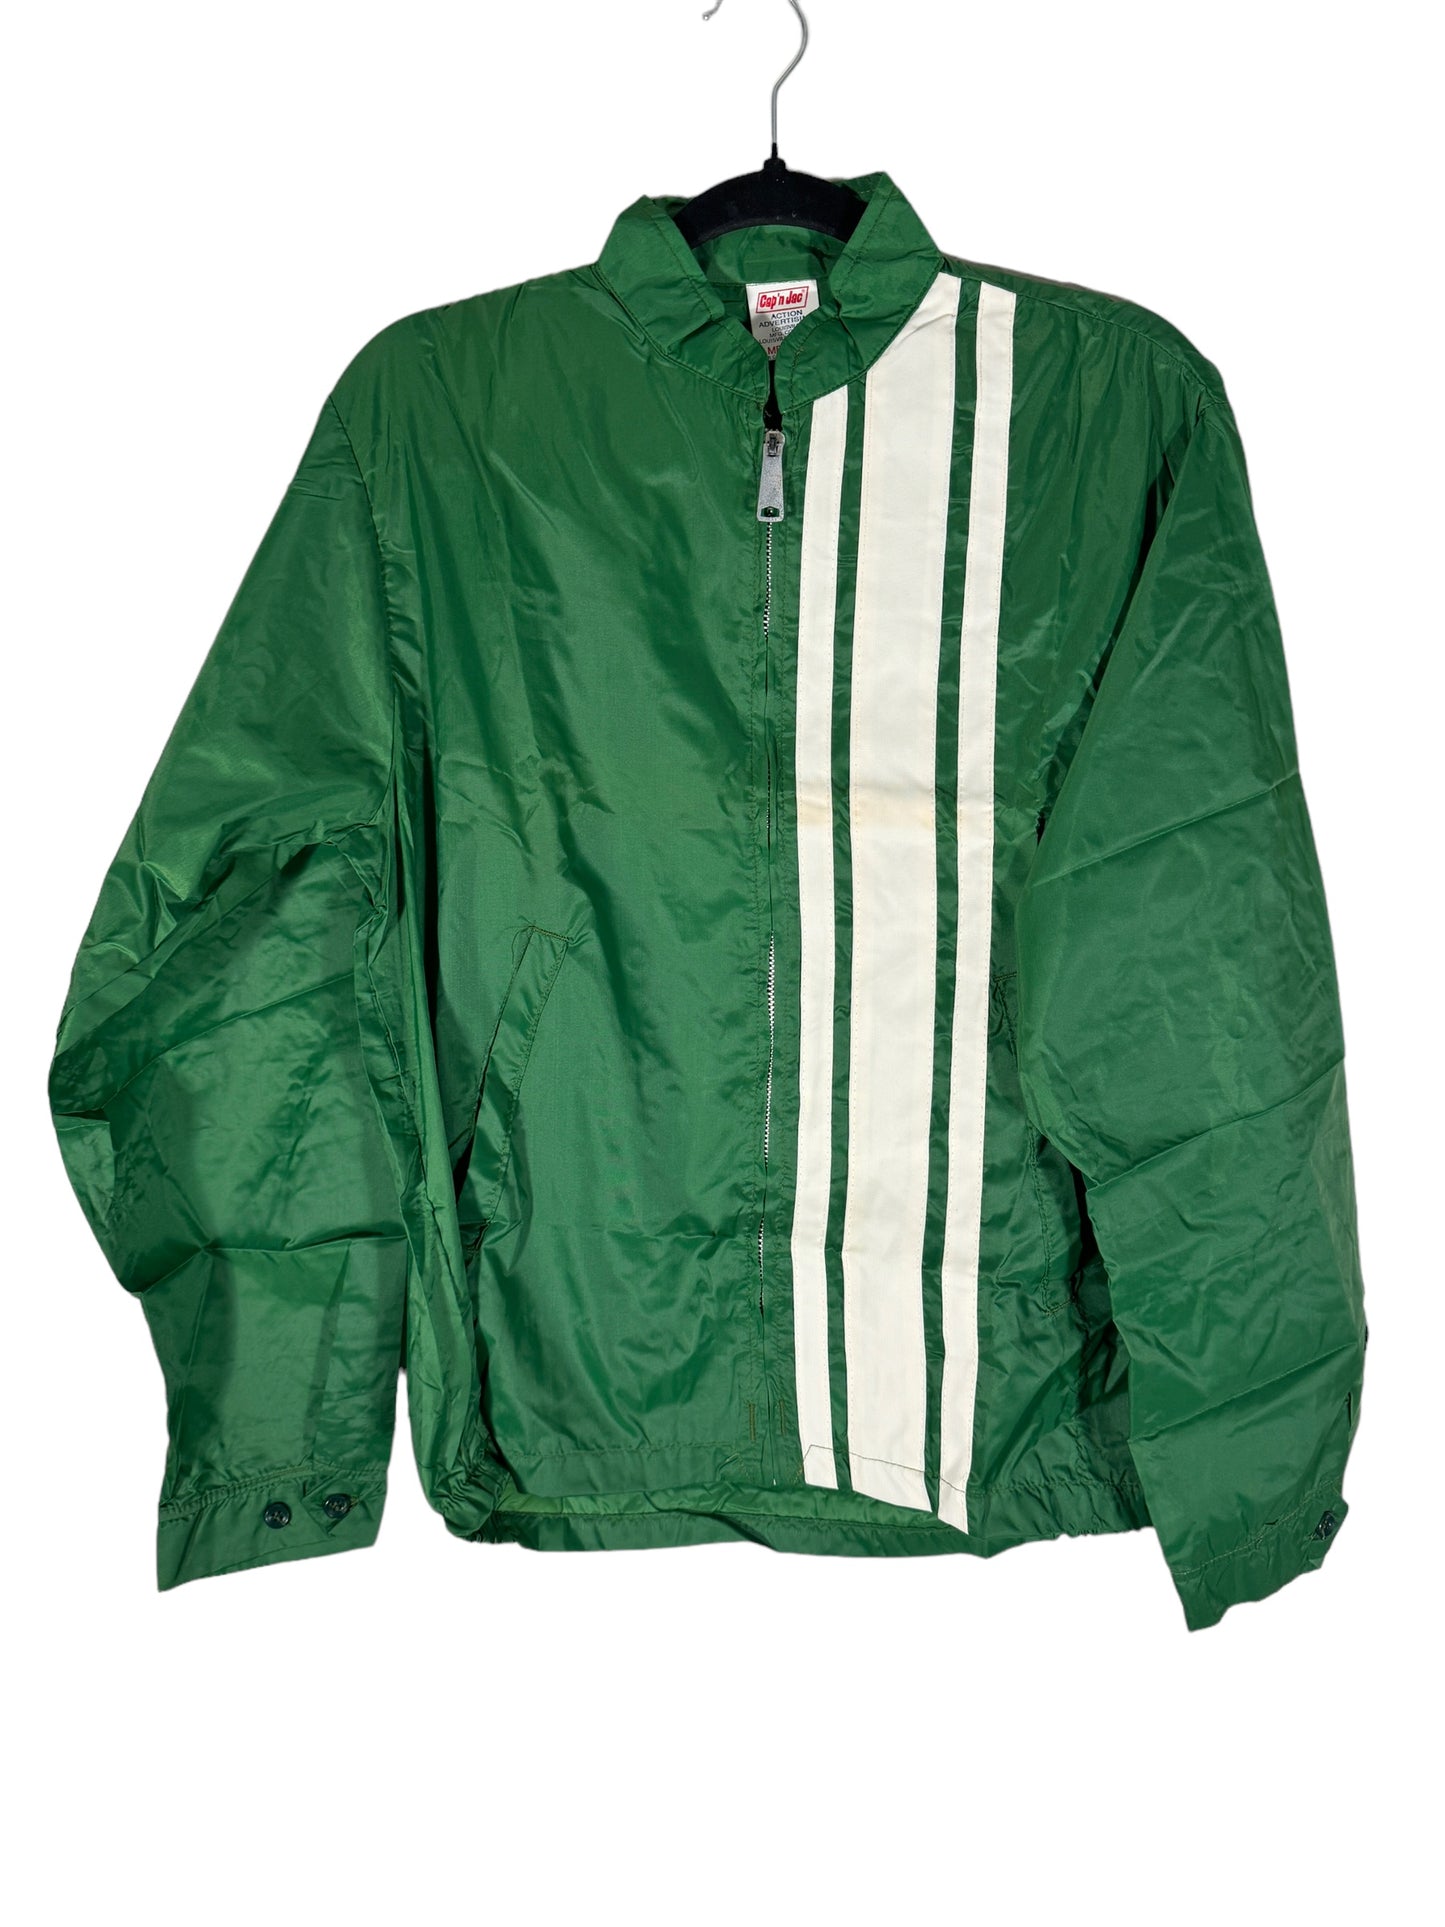 Vintage Cap'n Jac Race Stripe Jacket Green